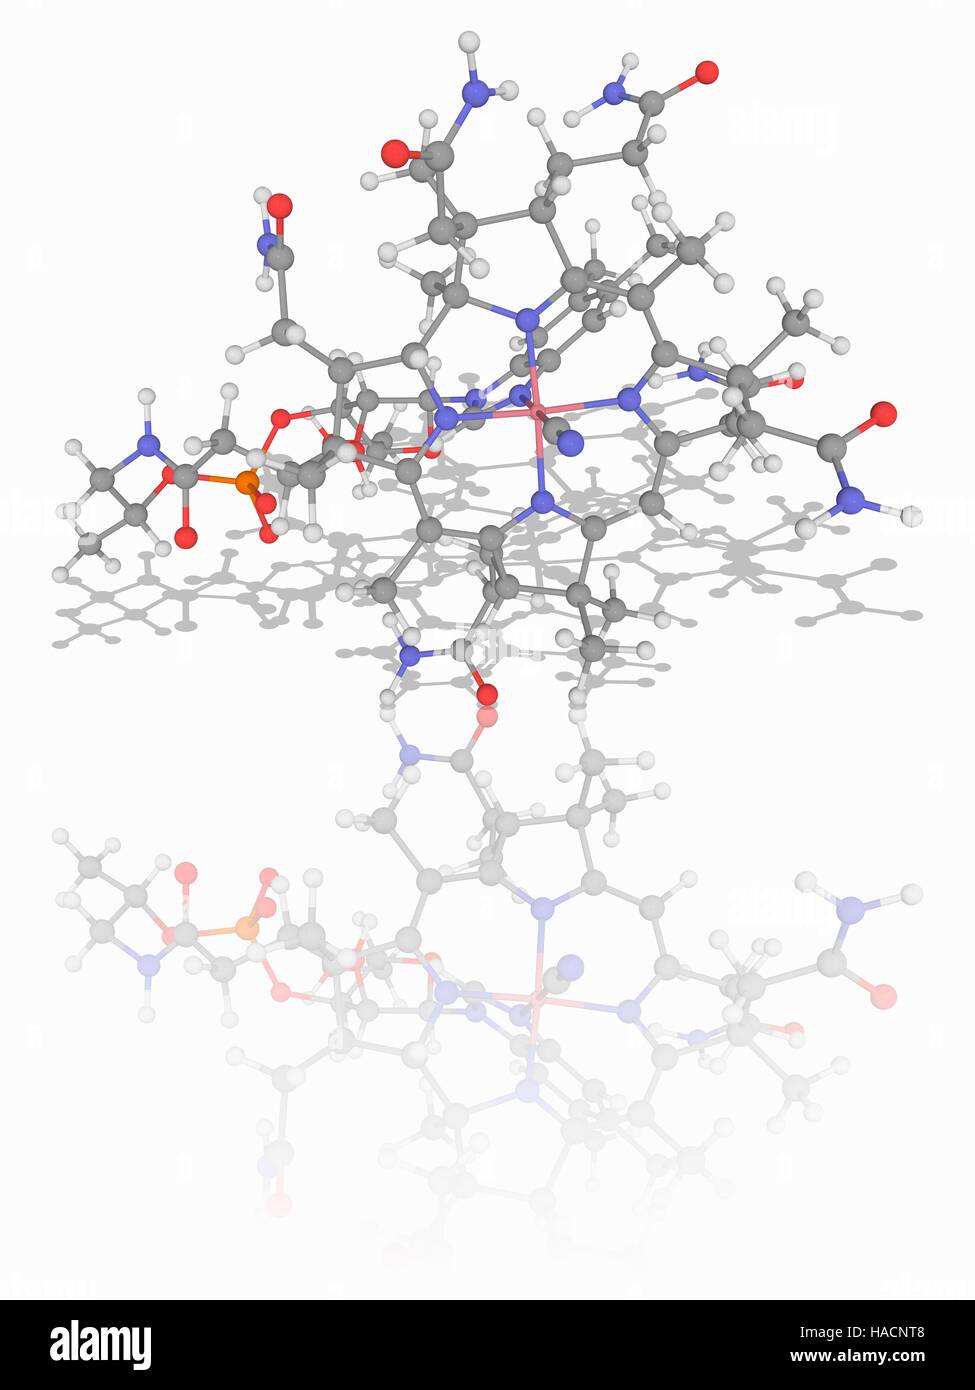 Vitamina B12. Il modello molecolare della cianocobalamina (C63.H88.co.n14.O14.P) forma di vitamina B12. Questa vitamina svolge un ruolo chiave per il normale funzionamento del cervello e del sistema nervoso. Gli atomi sono rappresentati da sfere e sono codificati a colori: cobalto (rosa), carbonio (grigio), Idrogeno (bianco), Azoto (blu), Ossigeno (rosso) e il fosforo (arancione). Illustrazione. Foto Stock